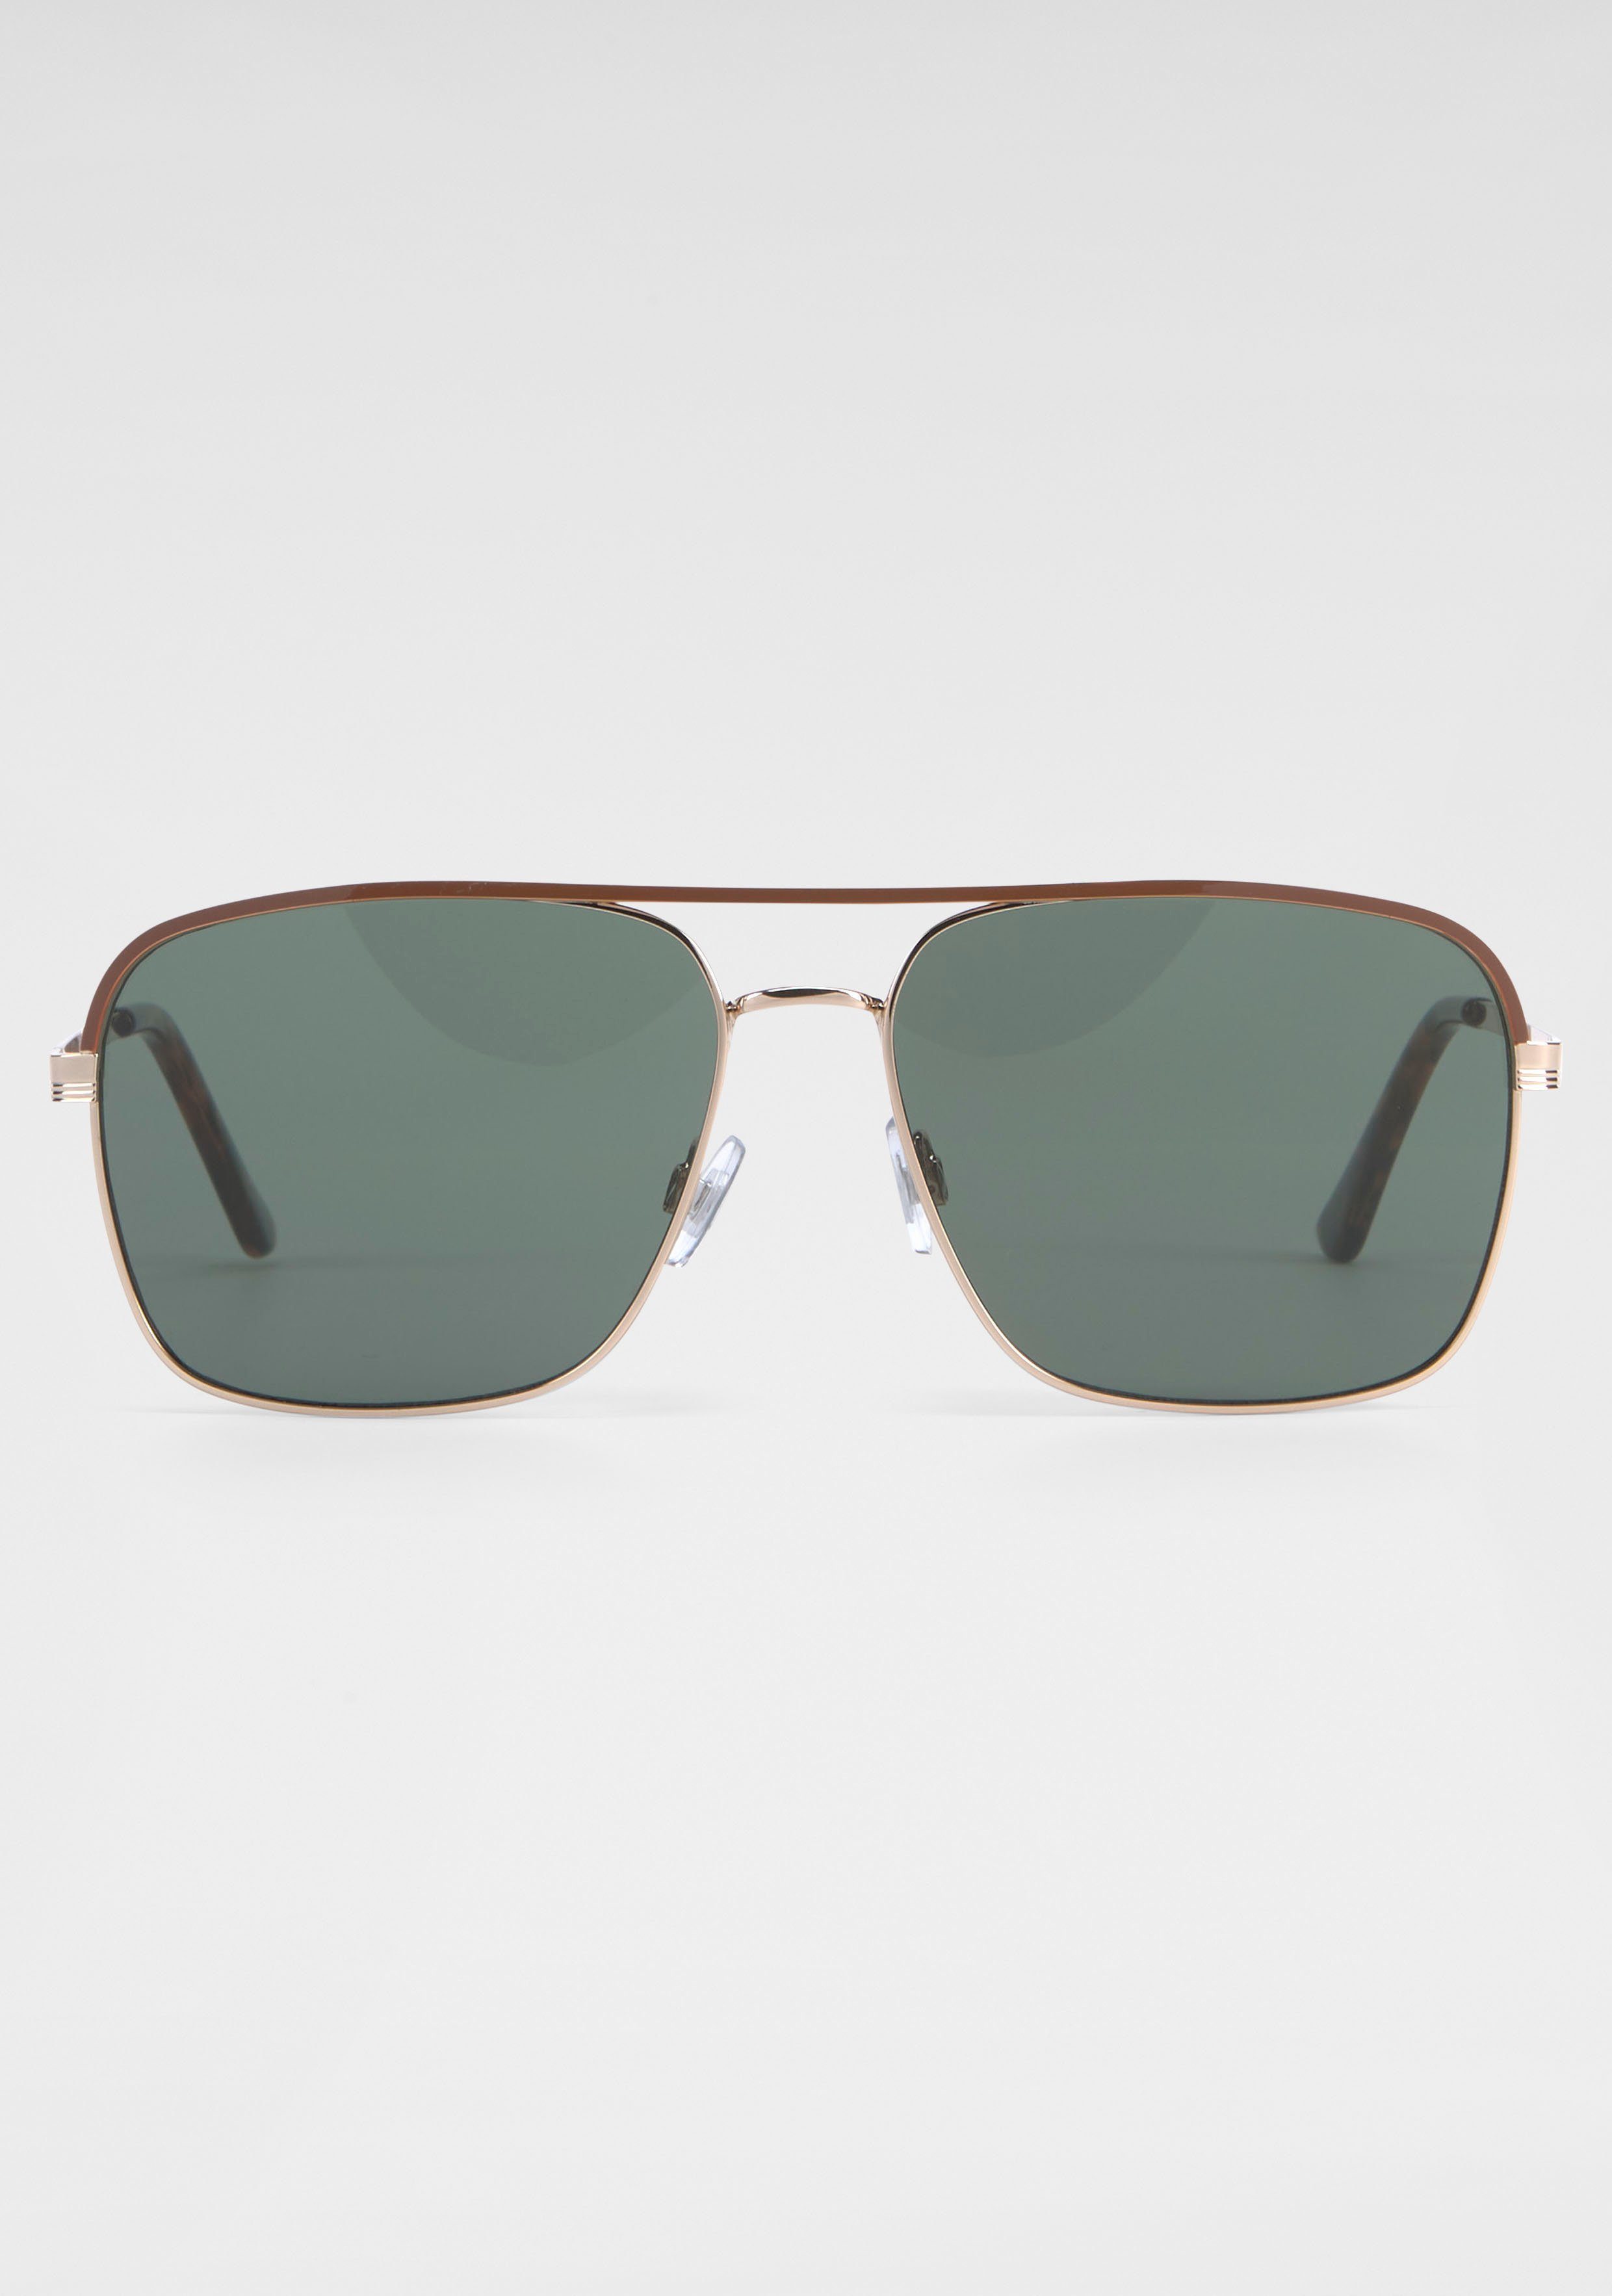 BASEFIELD Sonnenbrille goldfarben-grün | Sonnenbrillen